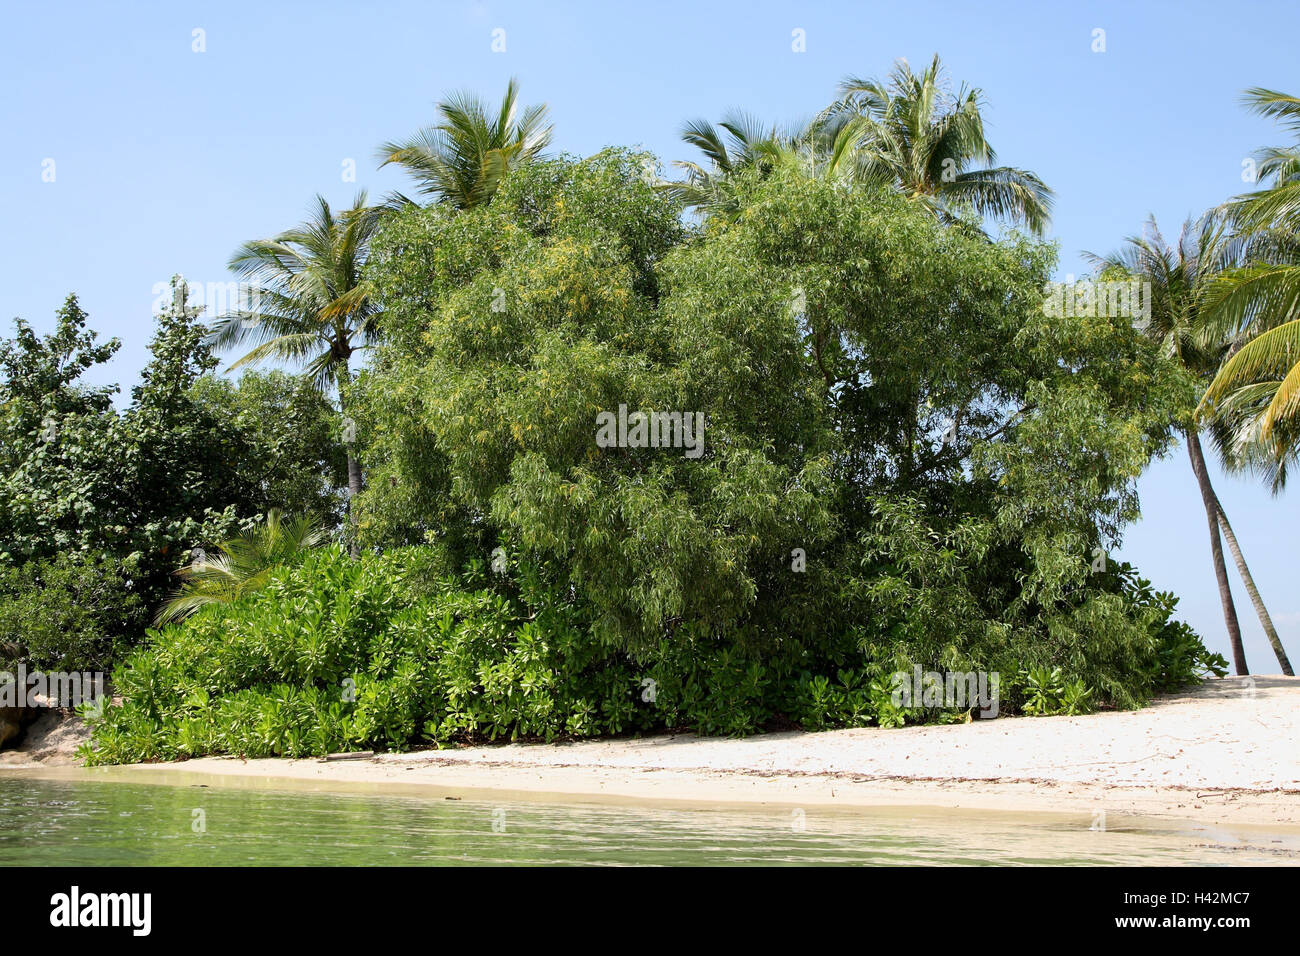 Spiaggia, palme, professional piante di fiori, Foto Stock